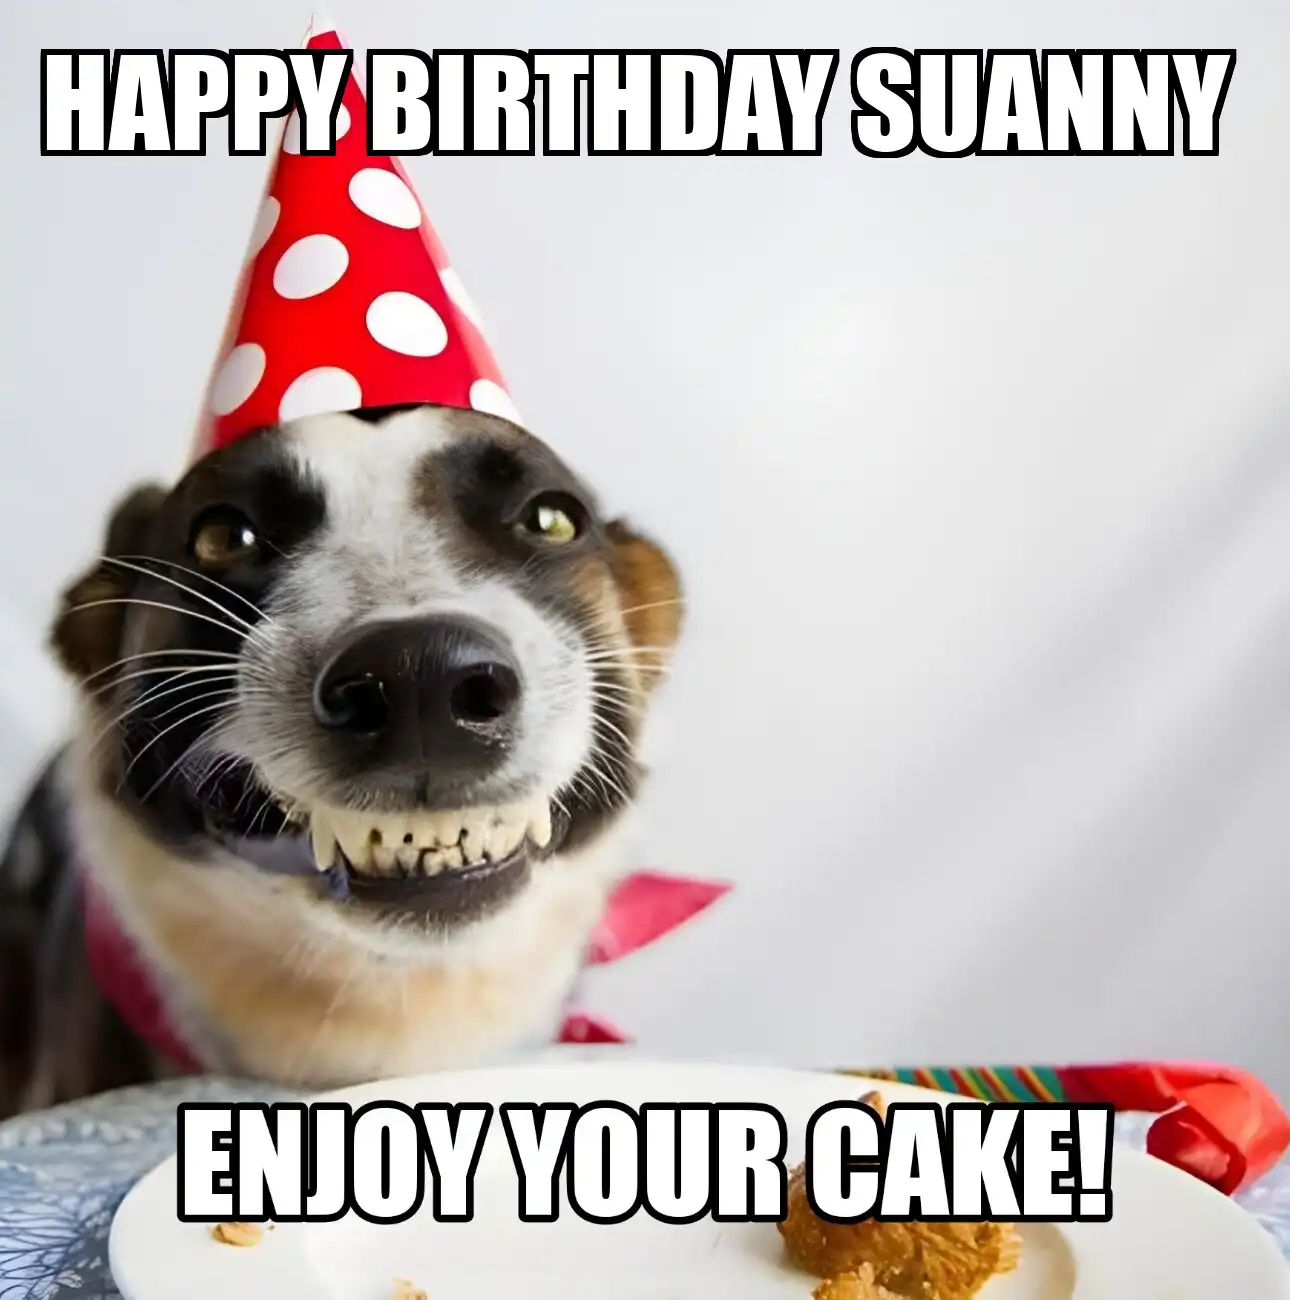 Happy Birthday Suanny Enjoy Your Cake Dog Meme